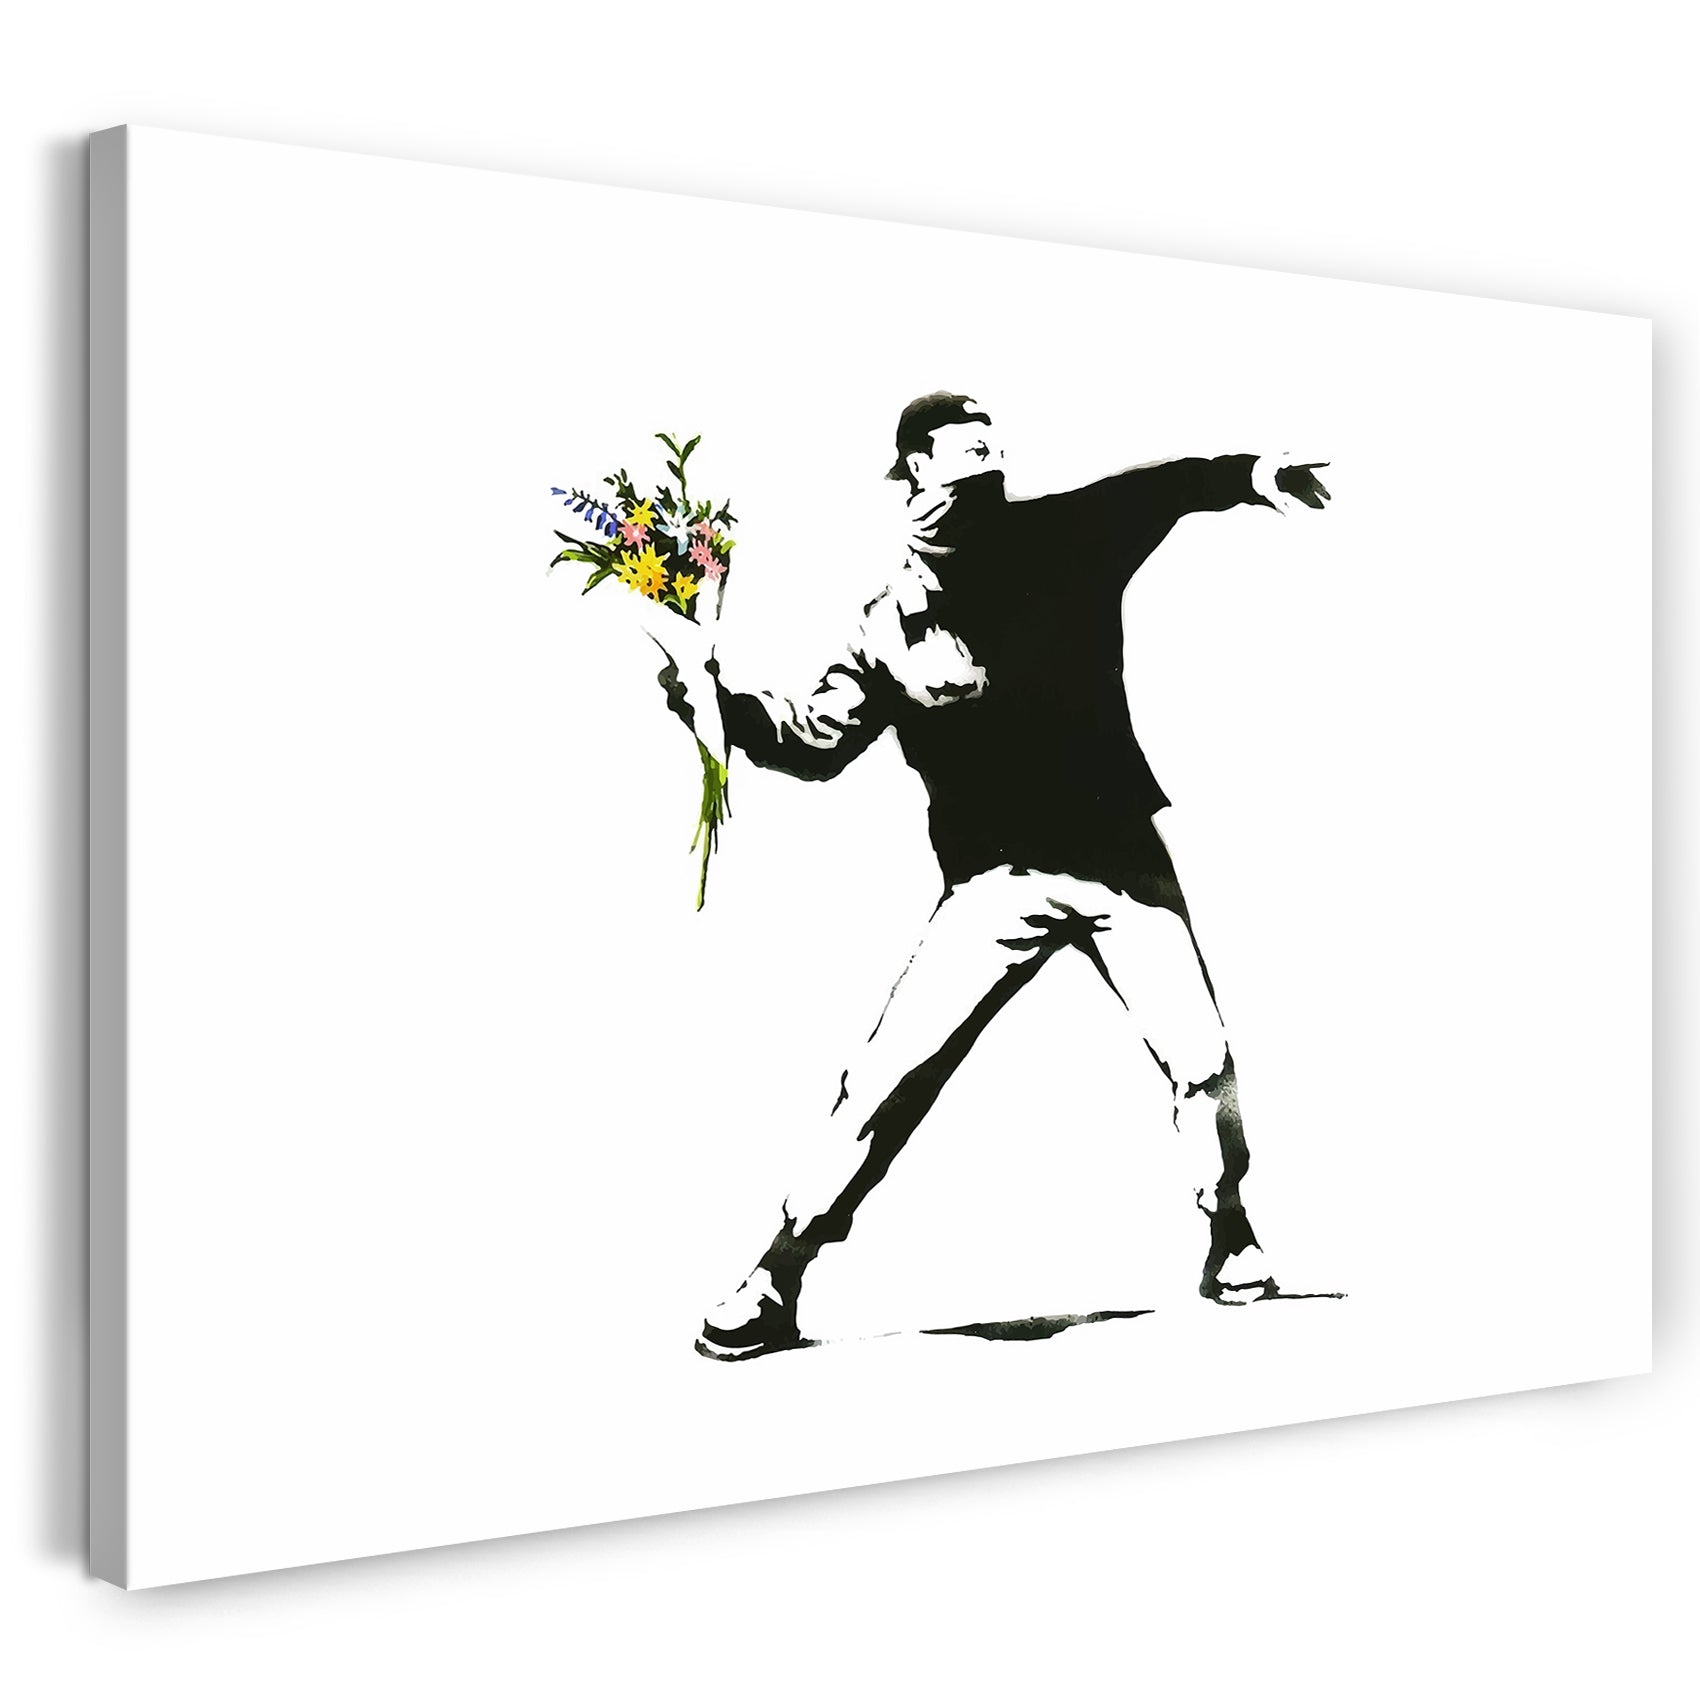 Leinwandbild Banksy - Autonomer wirft mit Blumenstrauß statt Molotow